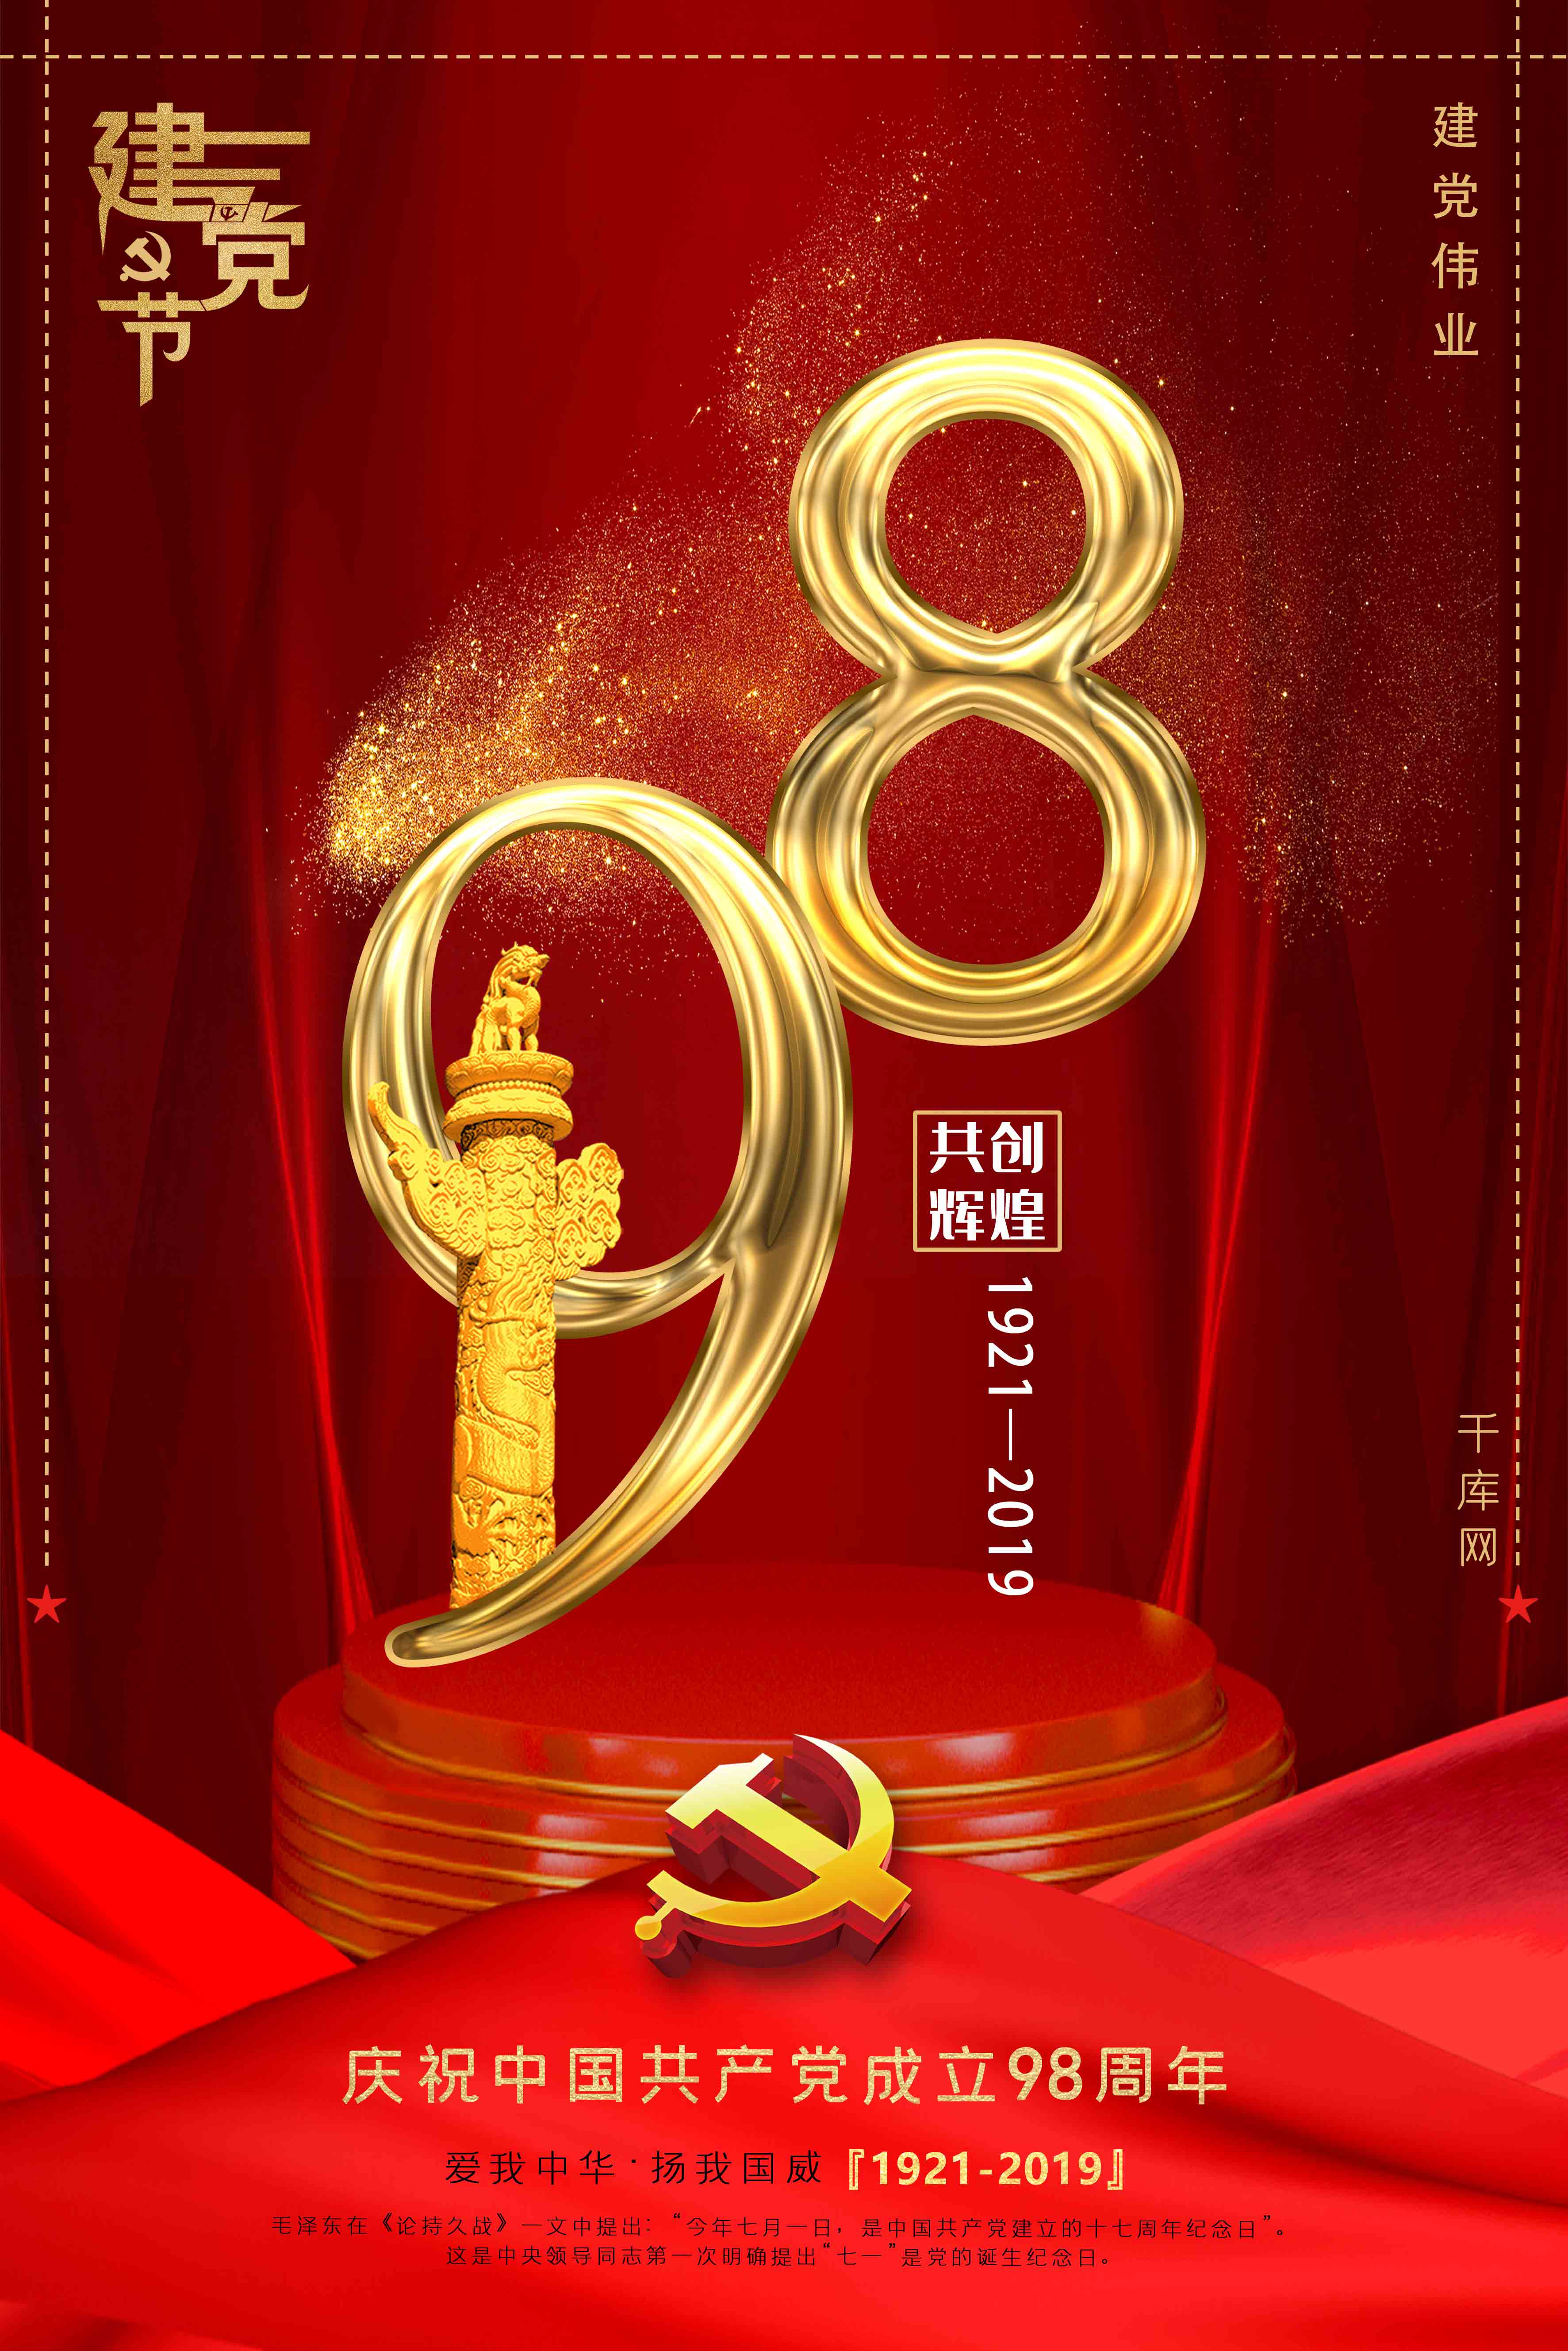 暗红色立体背景庆祝七一建党节98周年海报图片